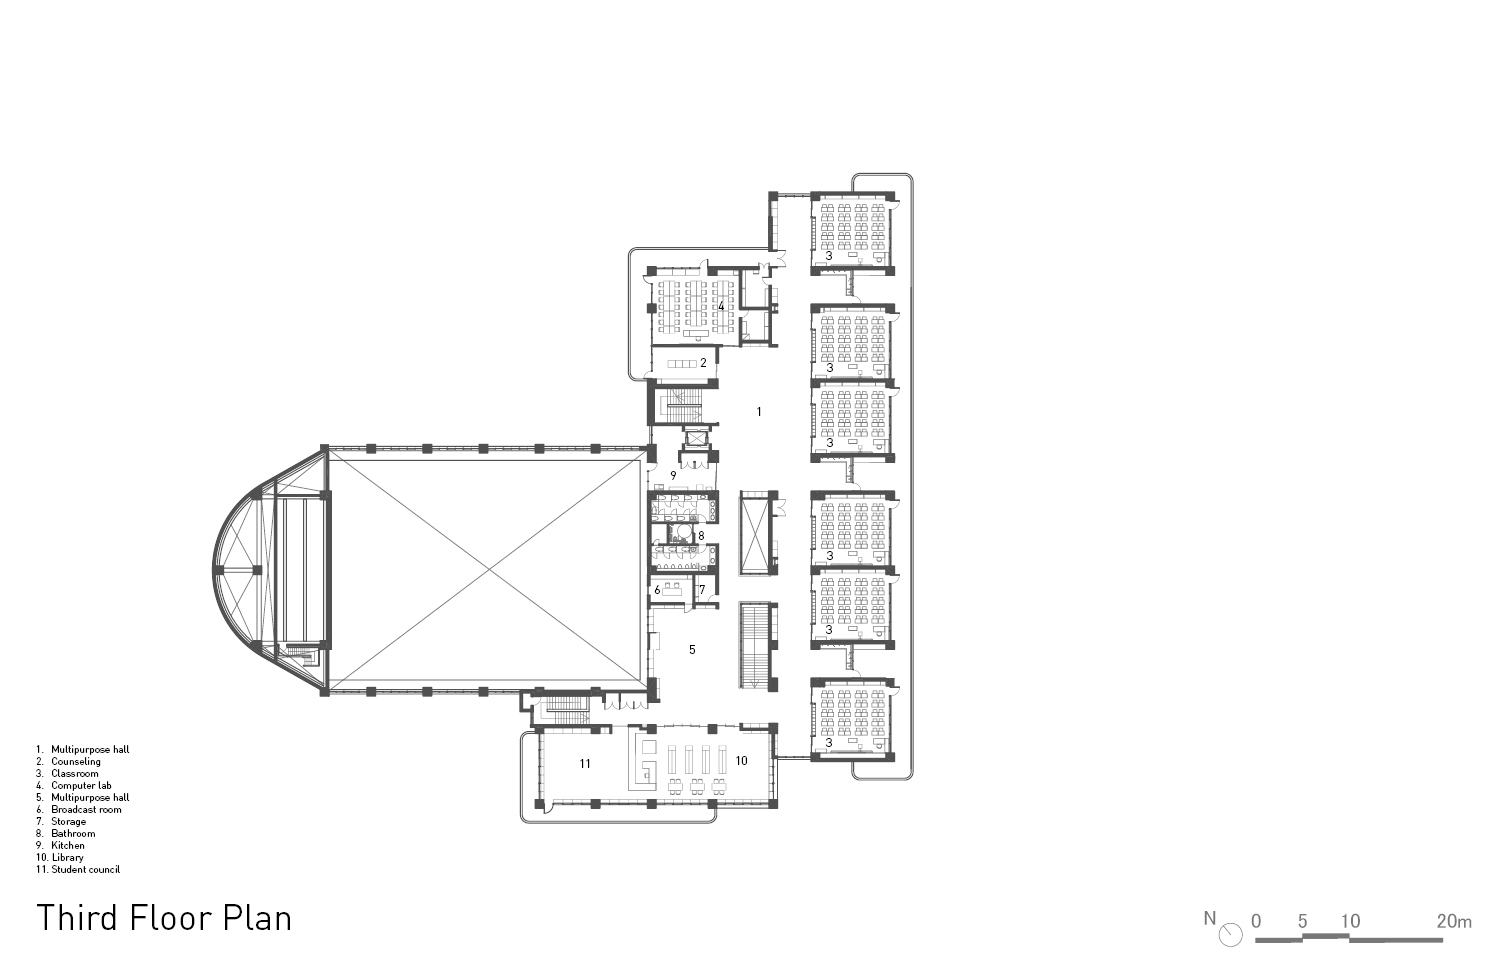 Third floor plan. | Atelier Hitoshi Abe